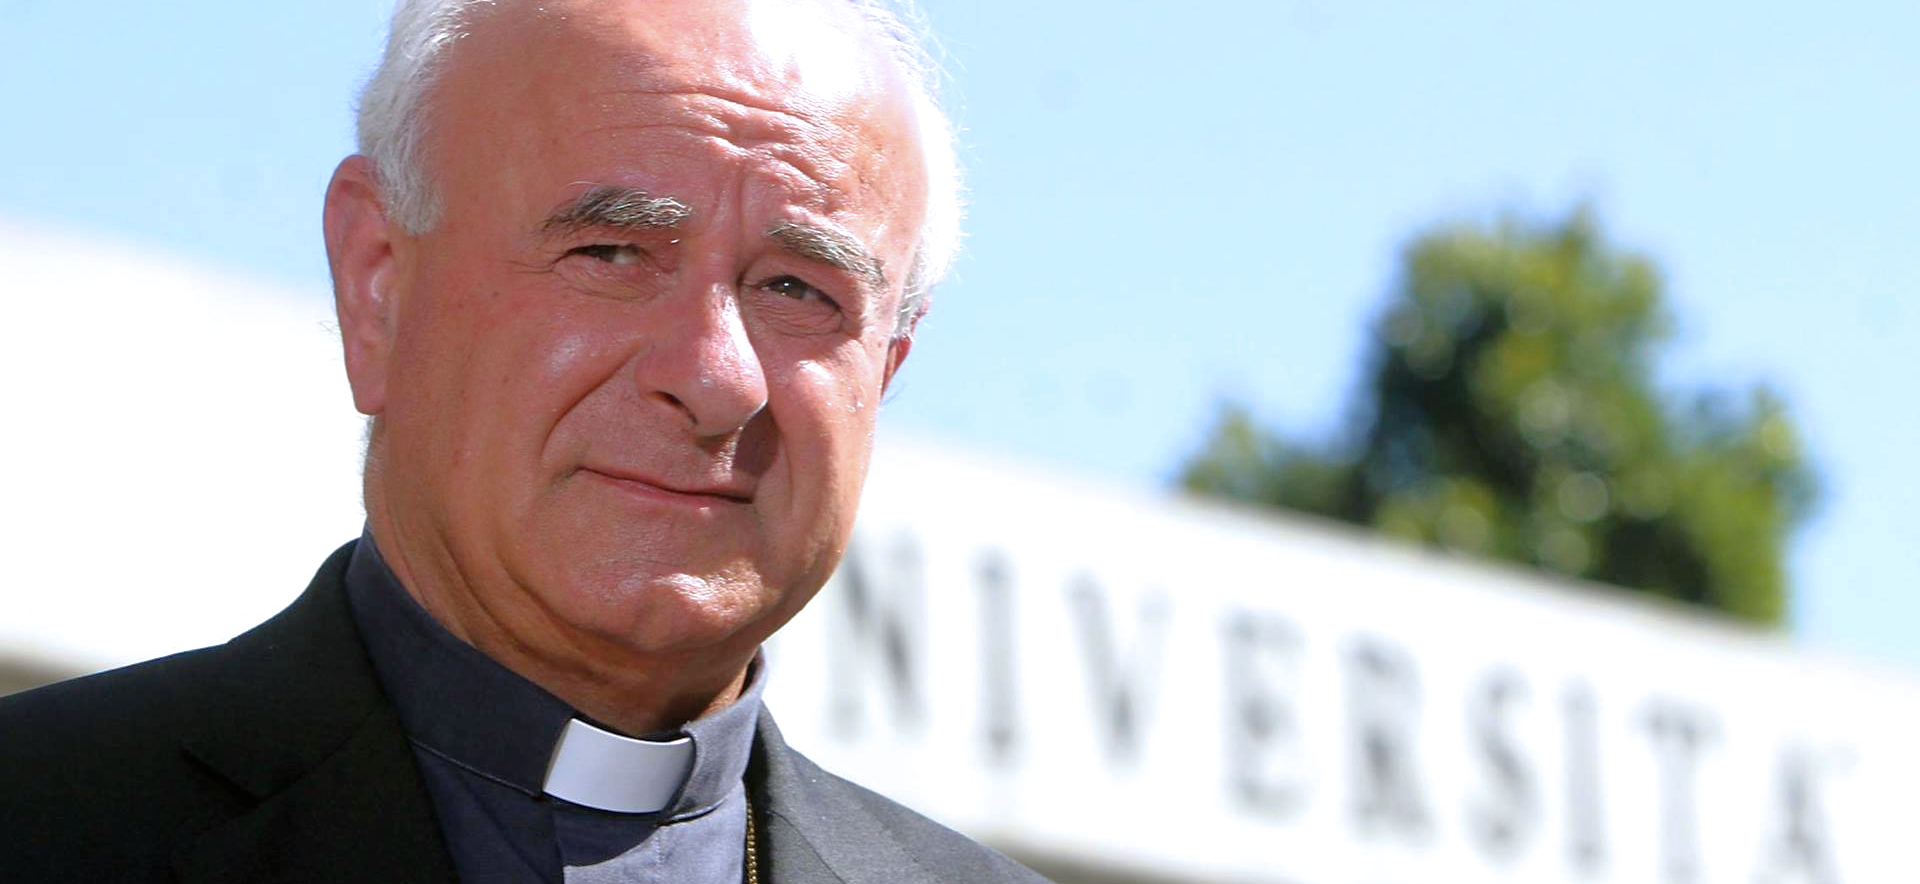 Mgr Vincenzo Paglia est président de l'Académie pontificale pour la vie depuis 2016 | Facebook